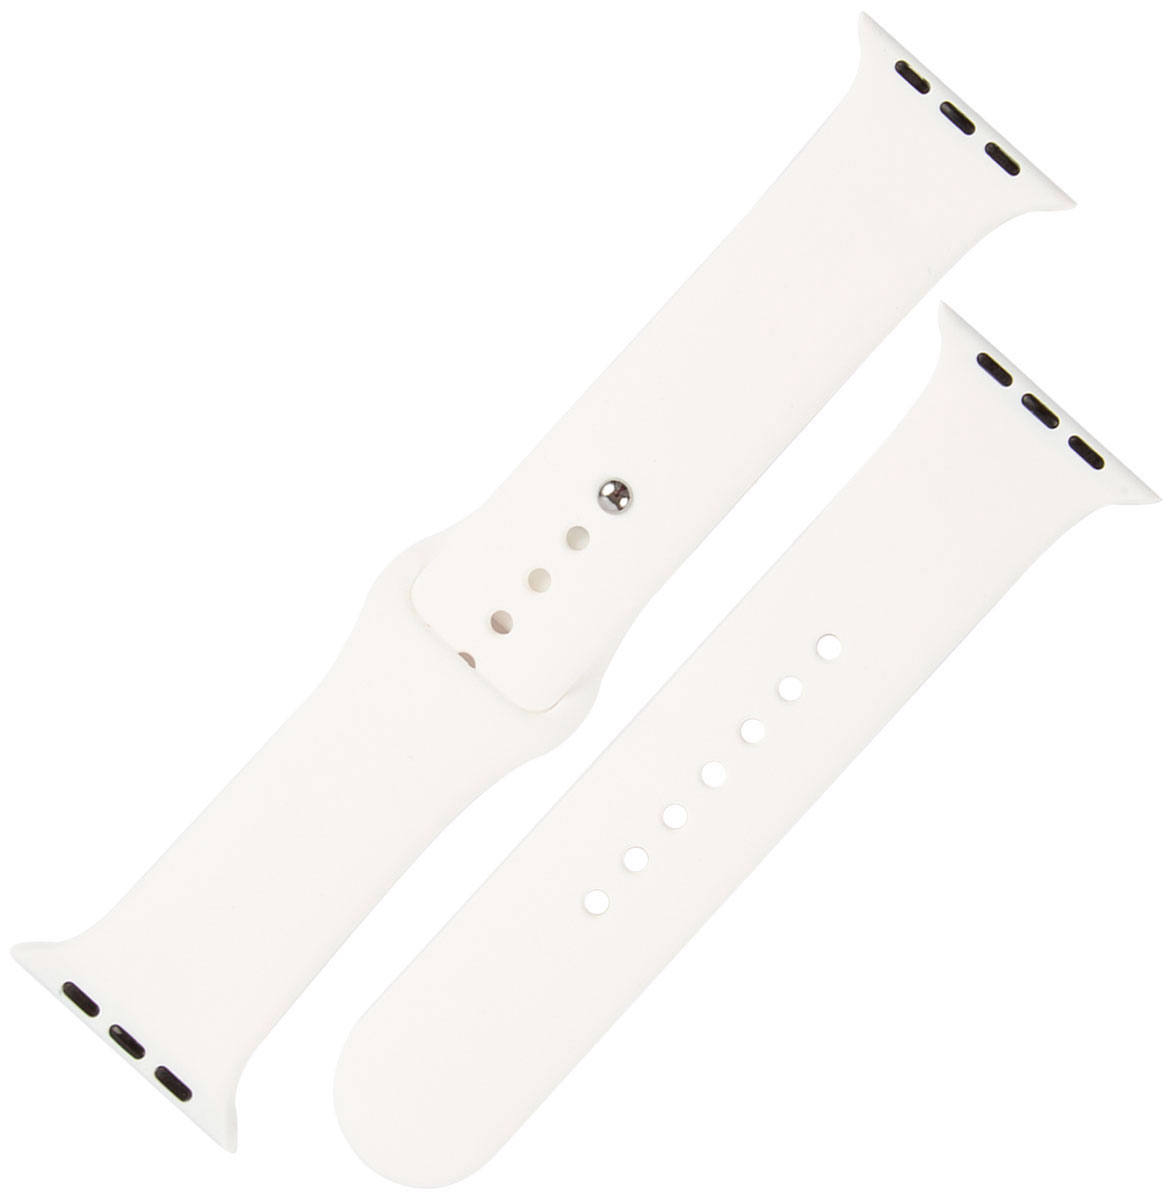 Ремешок силиконовый mObility для Apple watch – 42-44 мм (S3/S4/S5 SE/S6), белый ремешок силиконовый mobility для apple watch – 42 44 мм s3 s4 s5 se s6 черный